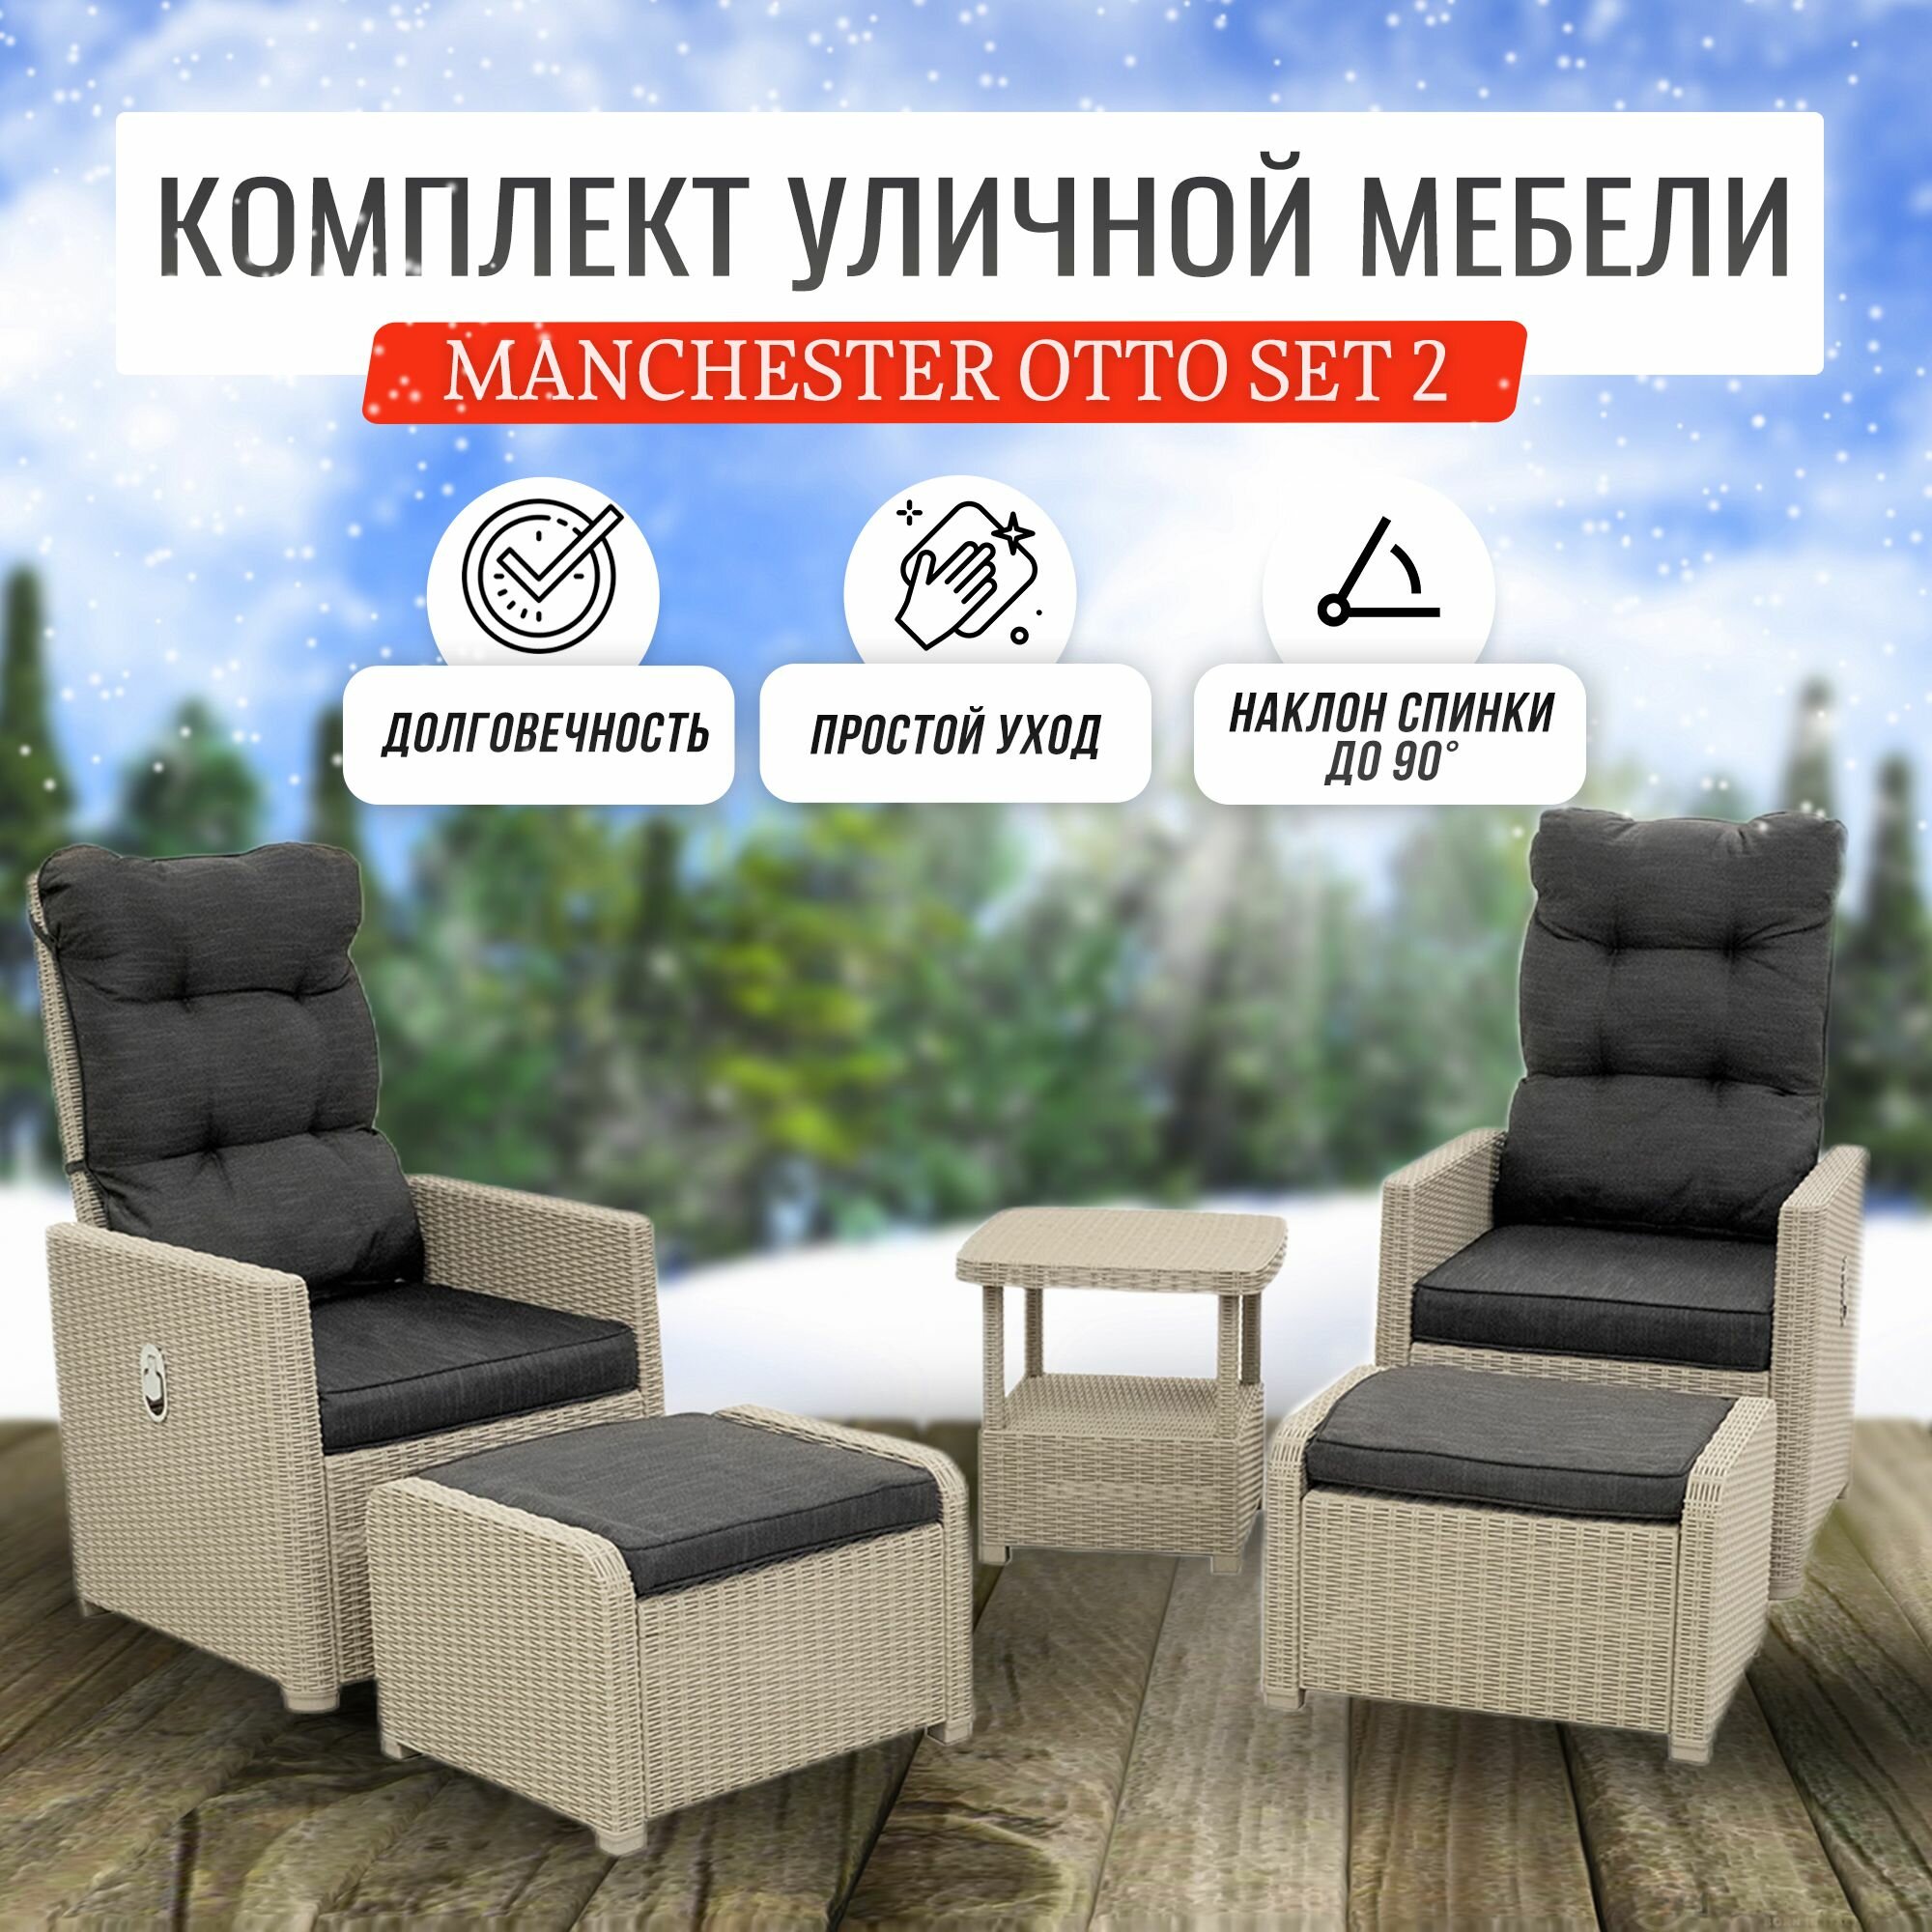 Комплект мебели B: Rattan MANCHESTER OTTO SET 2 уличная, бежево-серый